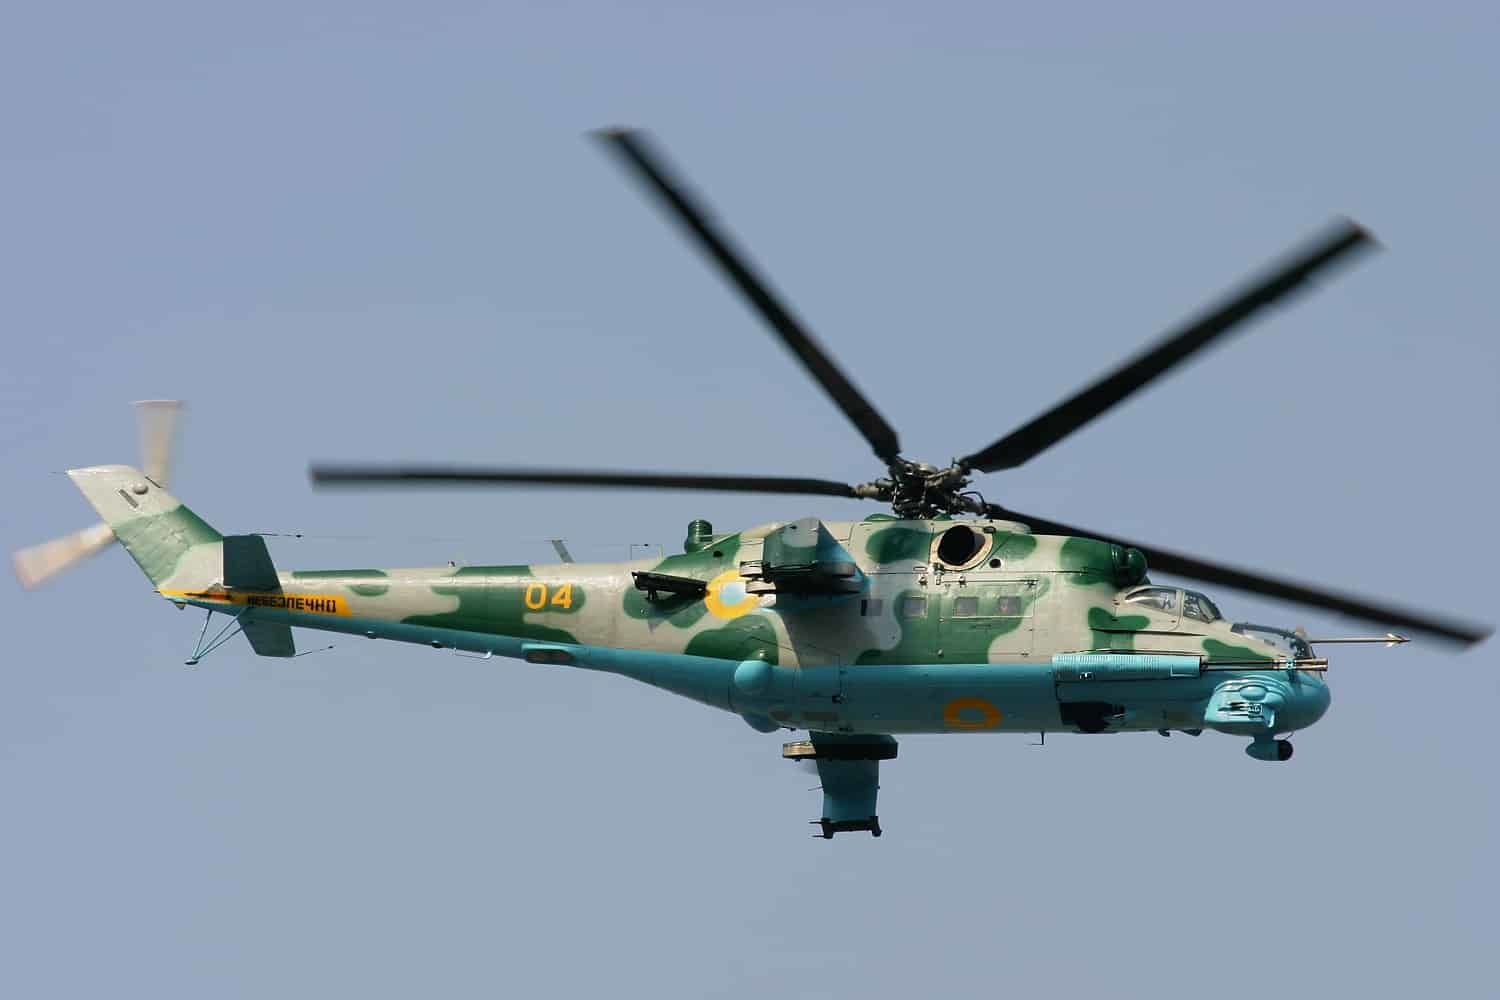 Польша тайно передала Украине около десятка вертолетов "Ми-24" - WSJ